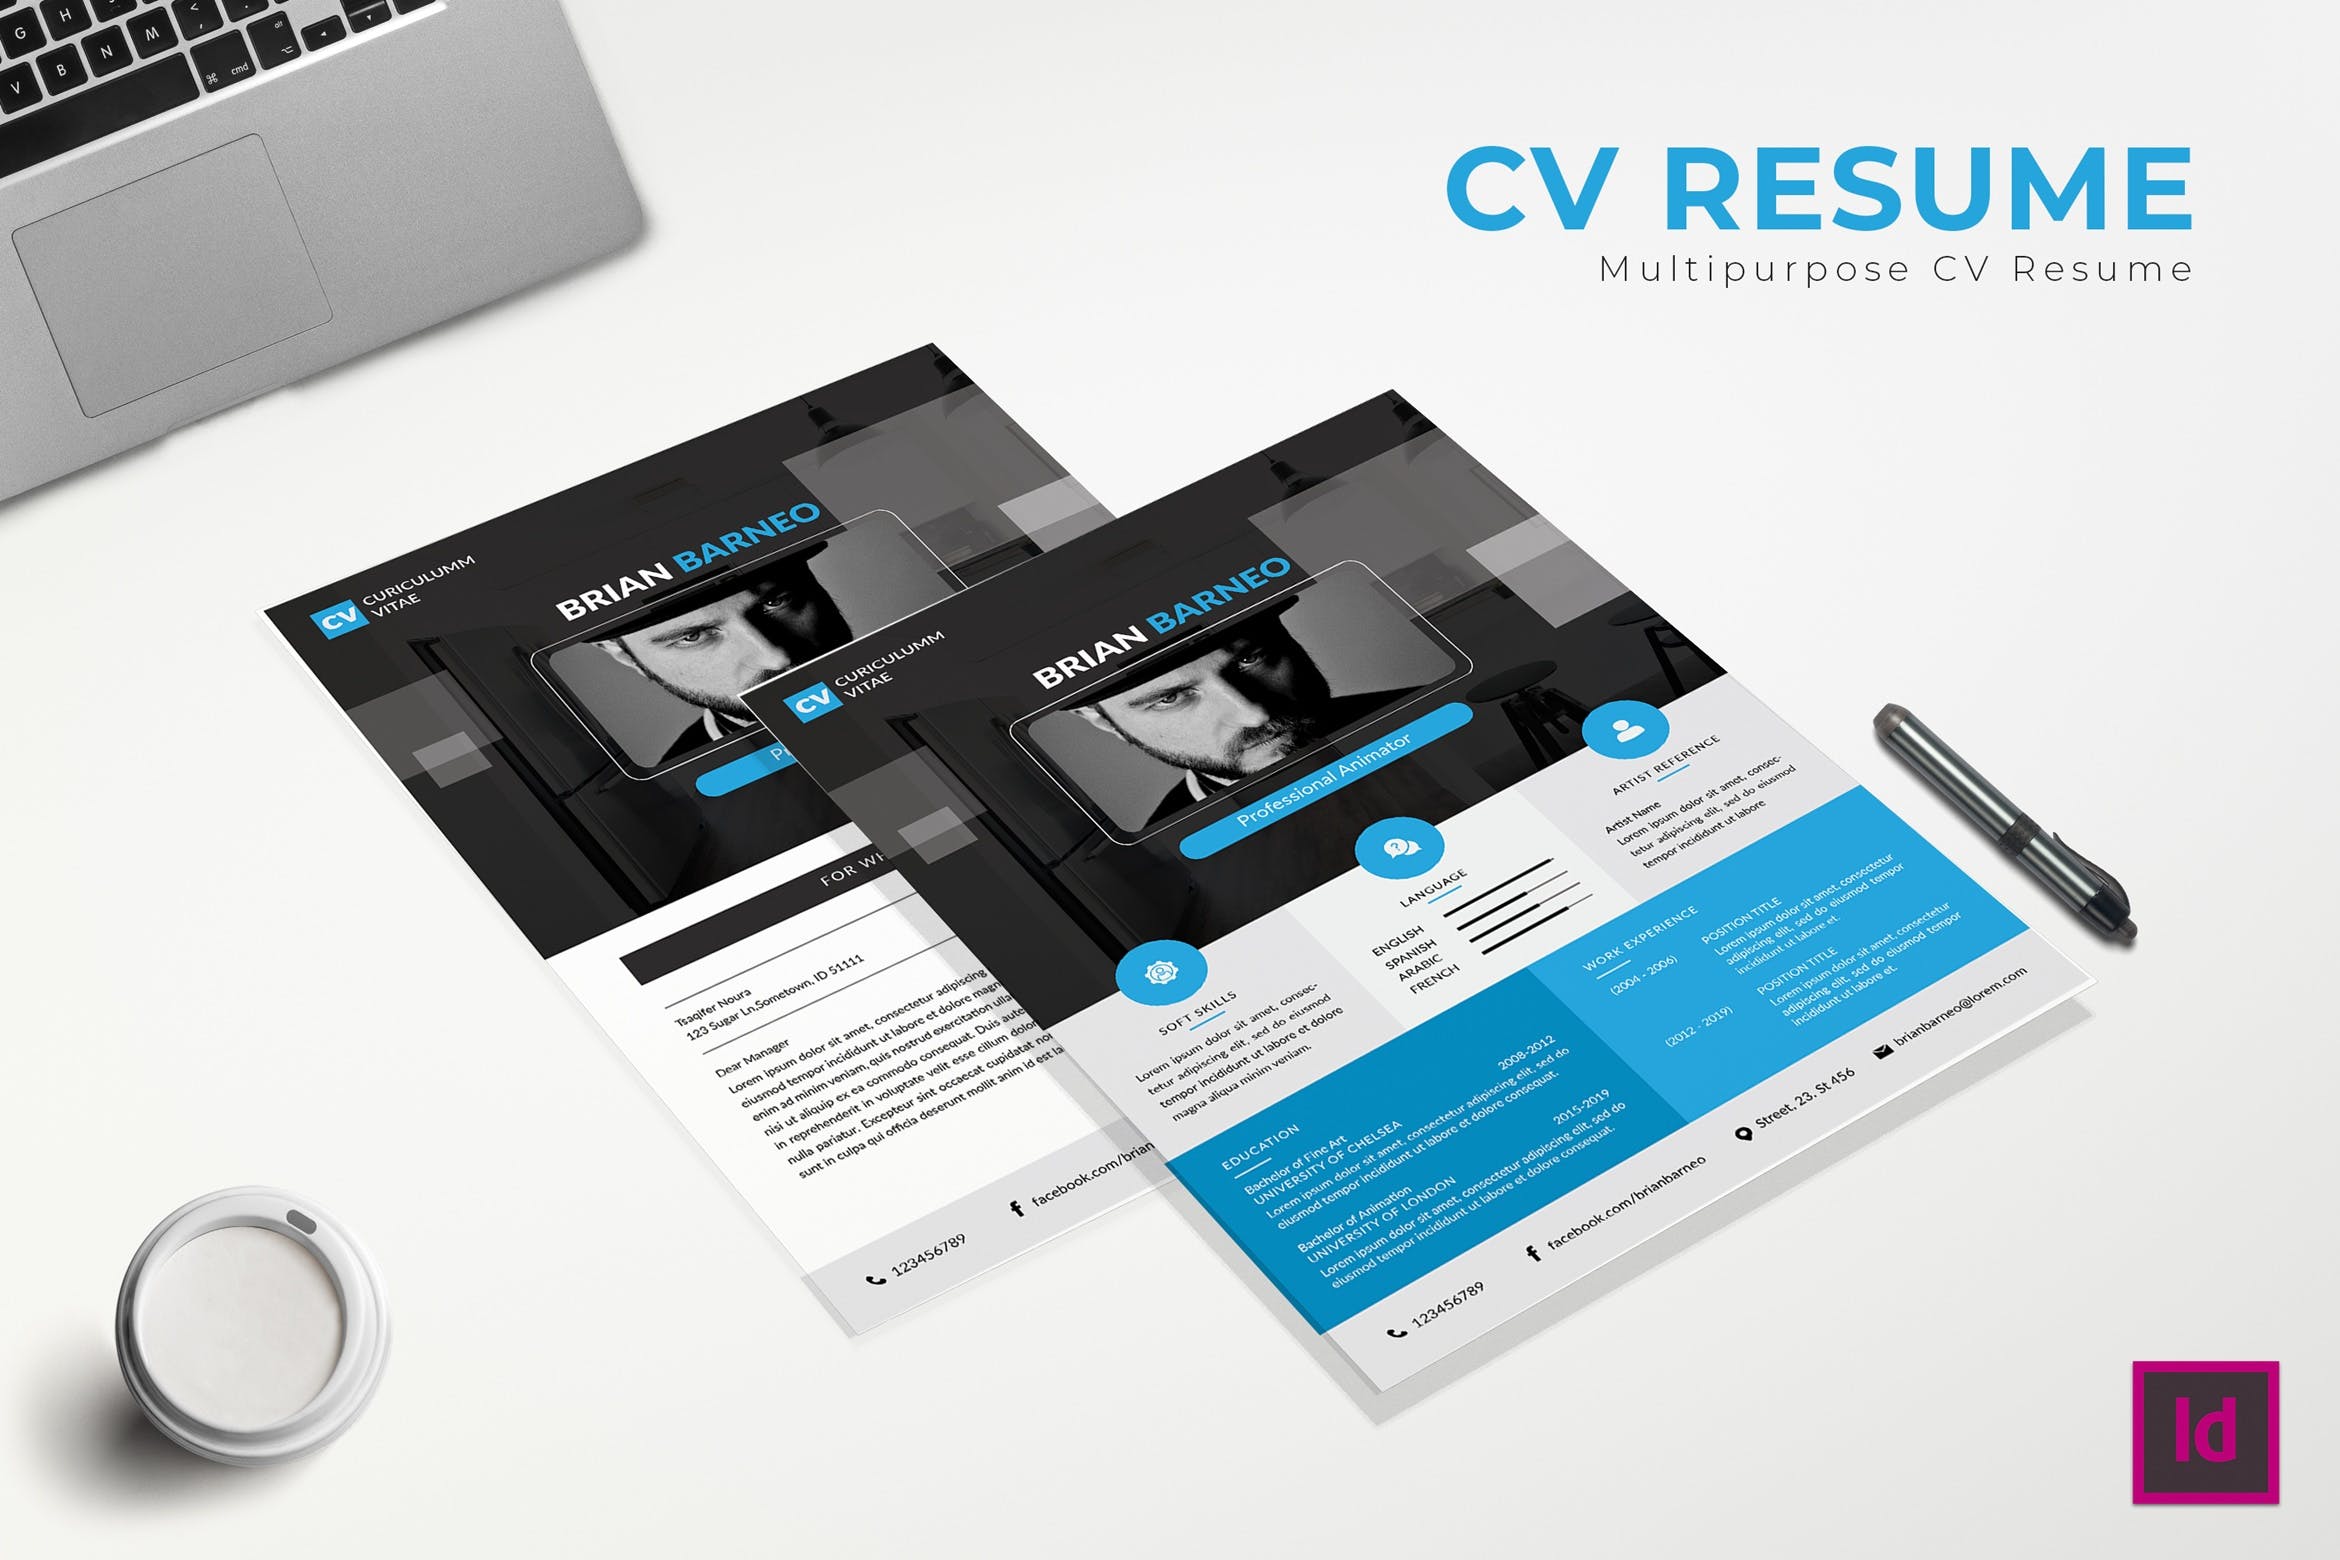 动画设计师介绍信&蚂蚁素材精选简历模板 Transparant CV Resume插图